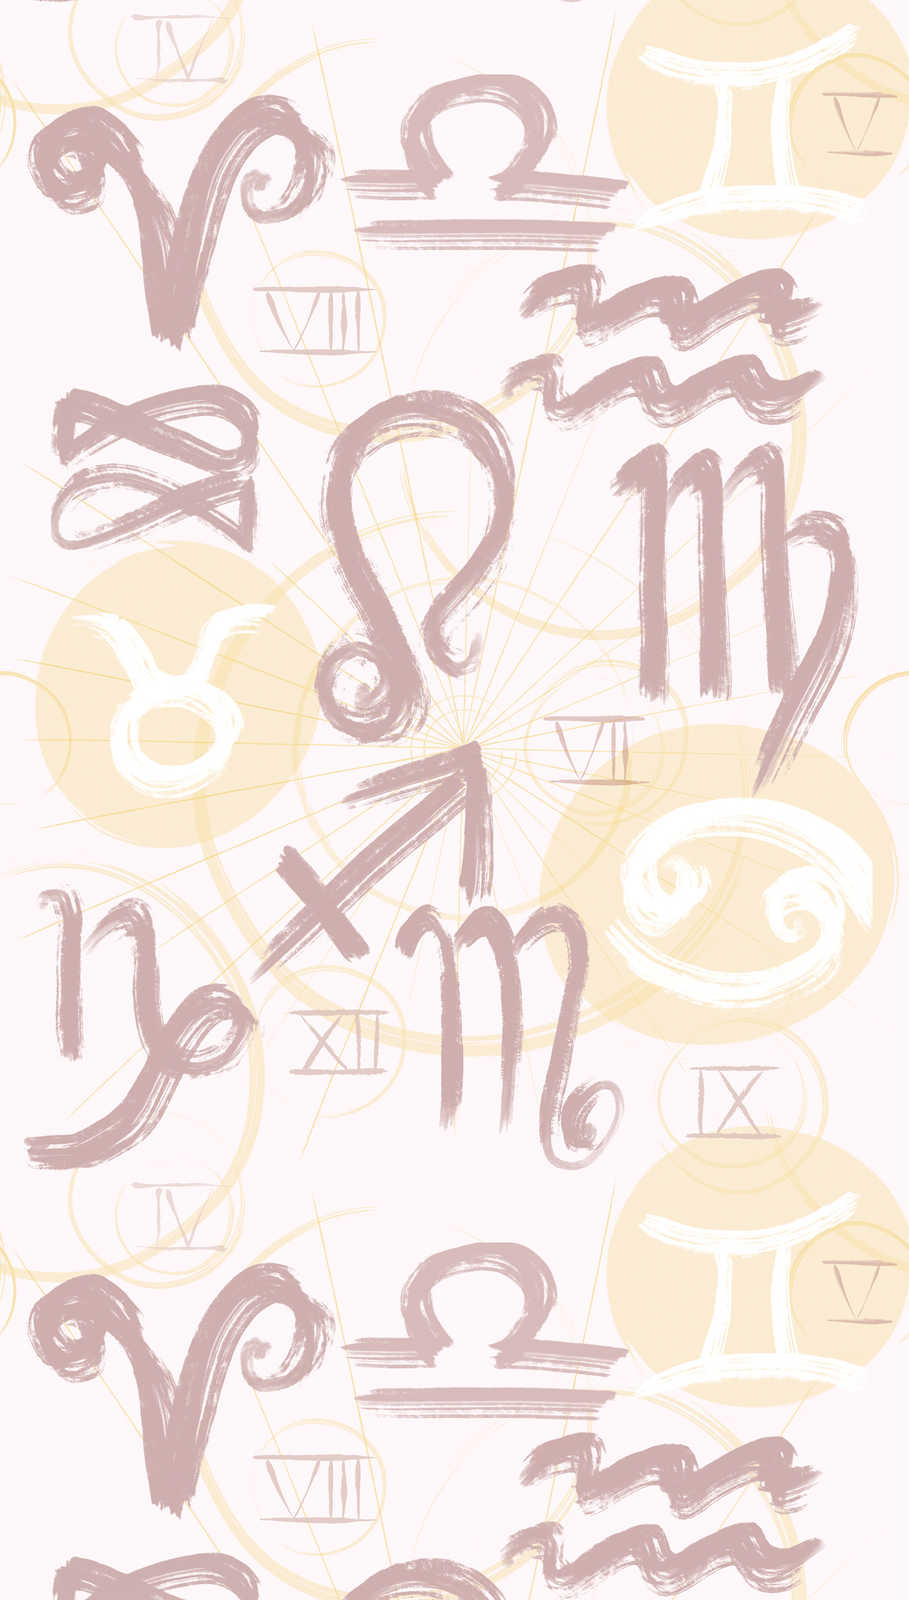             Papier peint avec symboles du zodiaque et chiffres romains - crème, jaune, rose
        